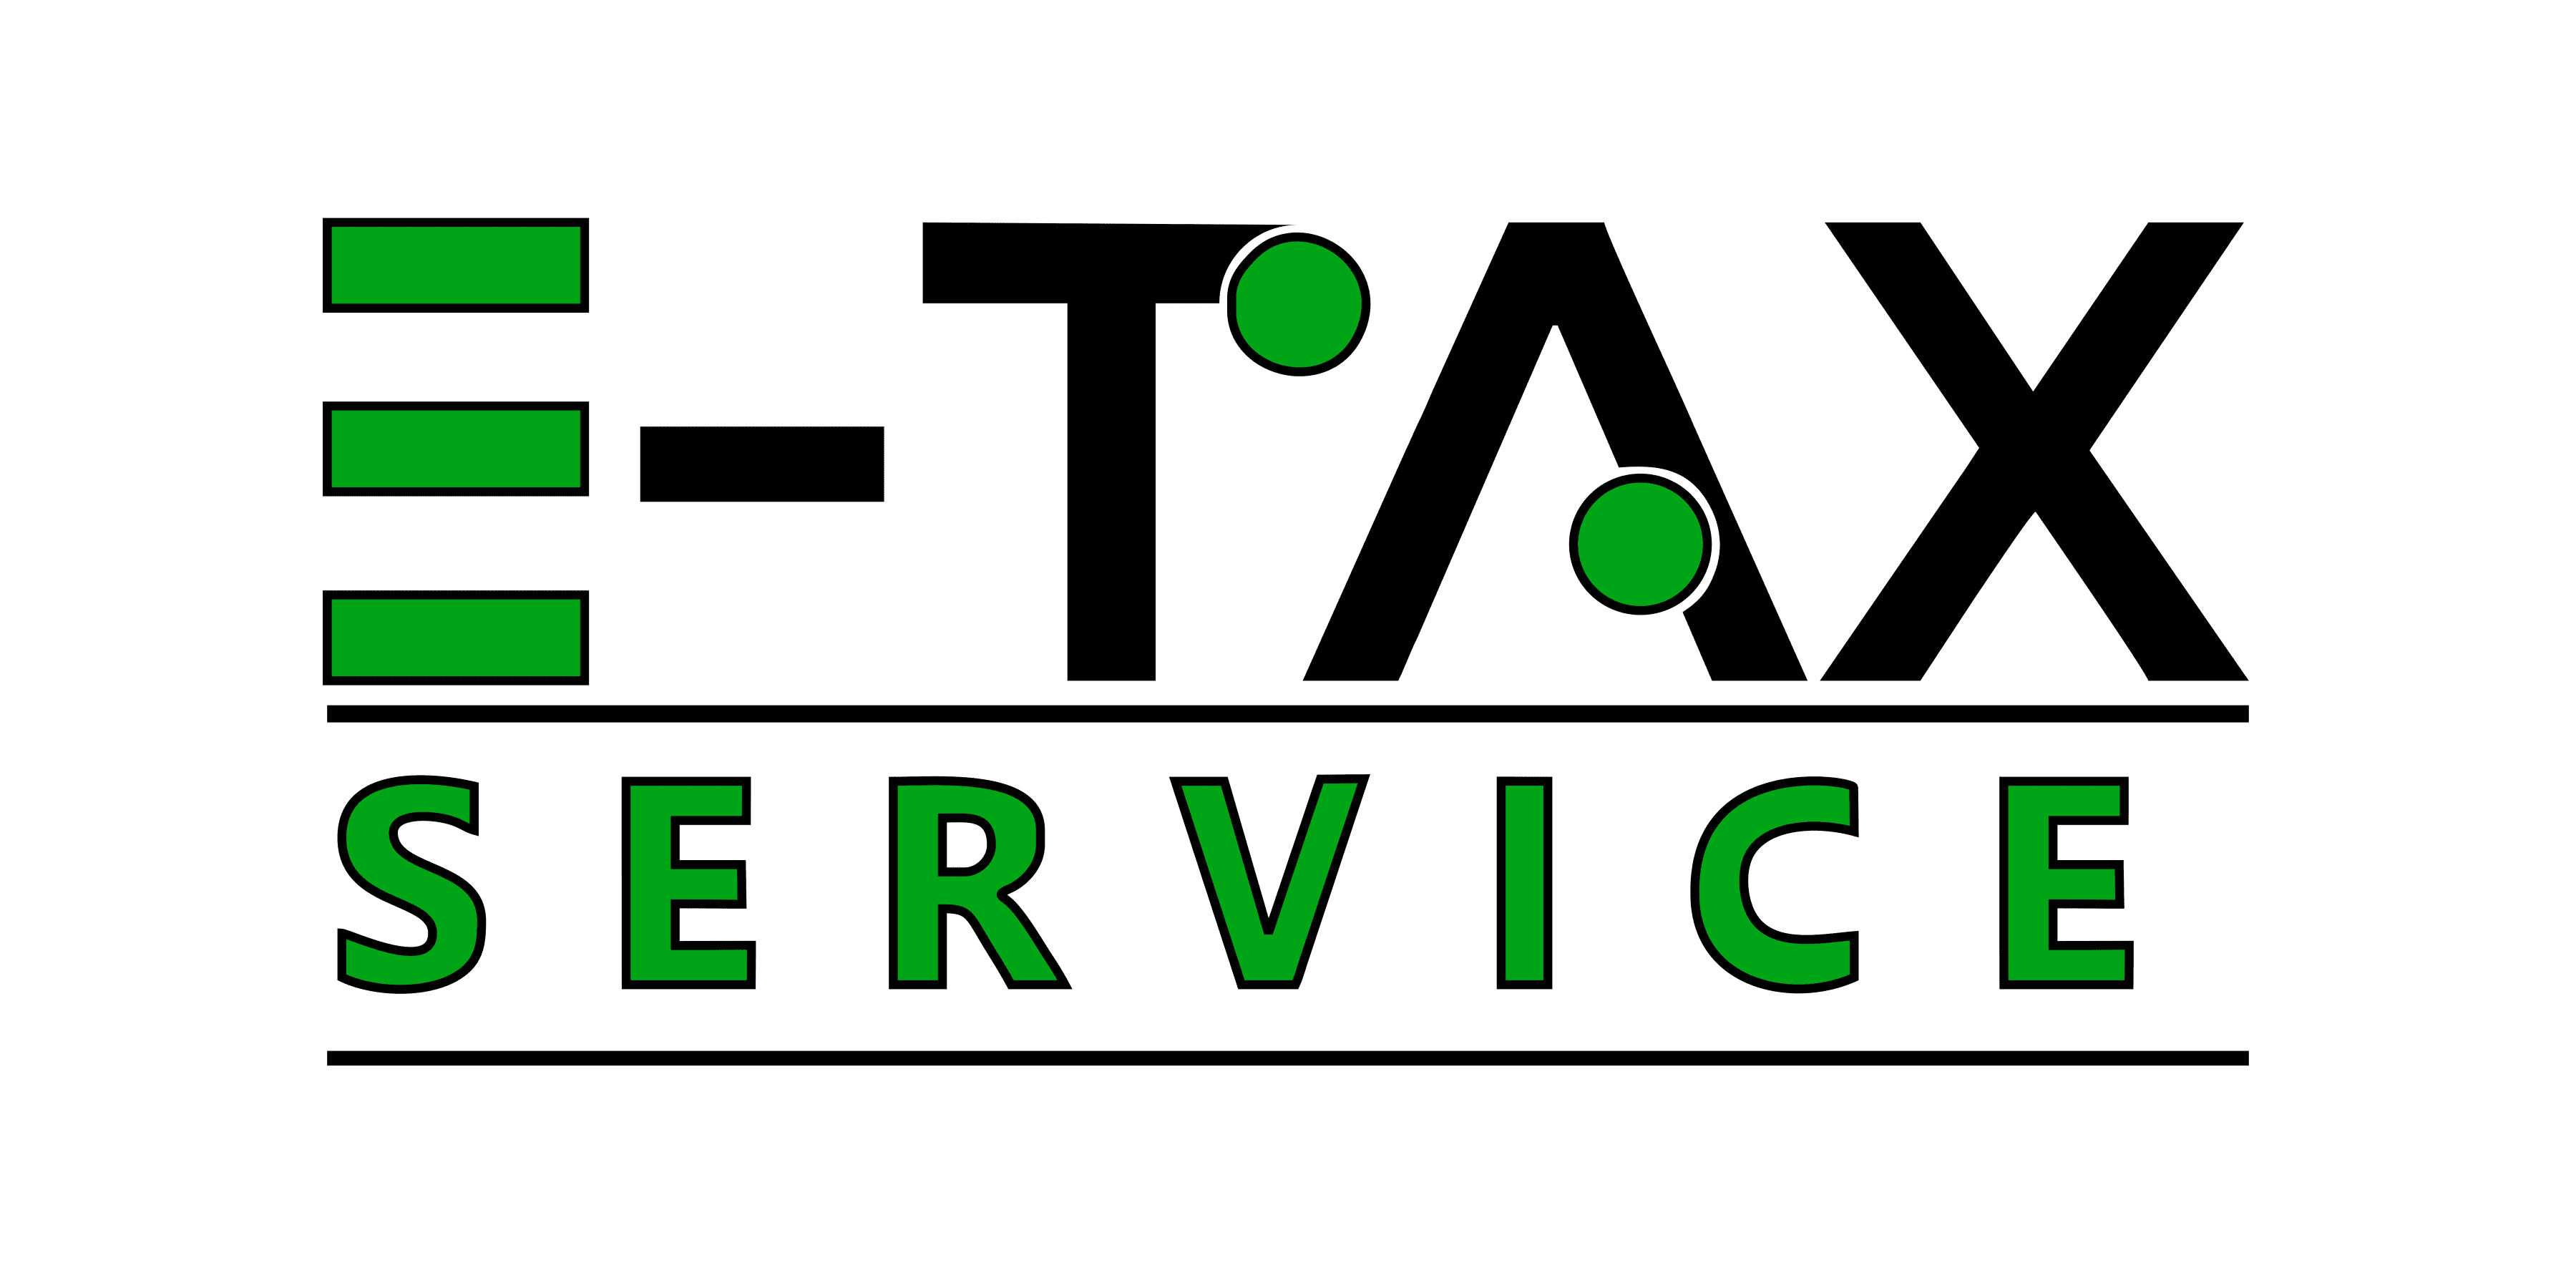 E-tax Service